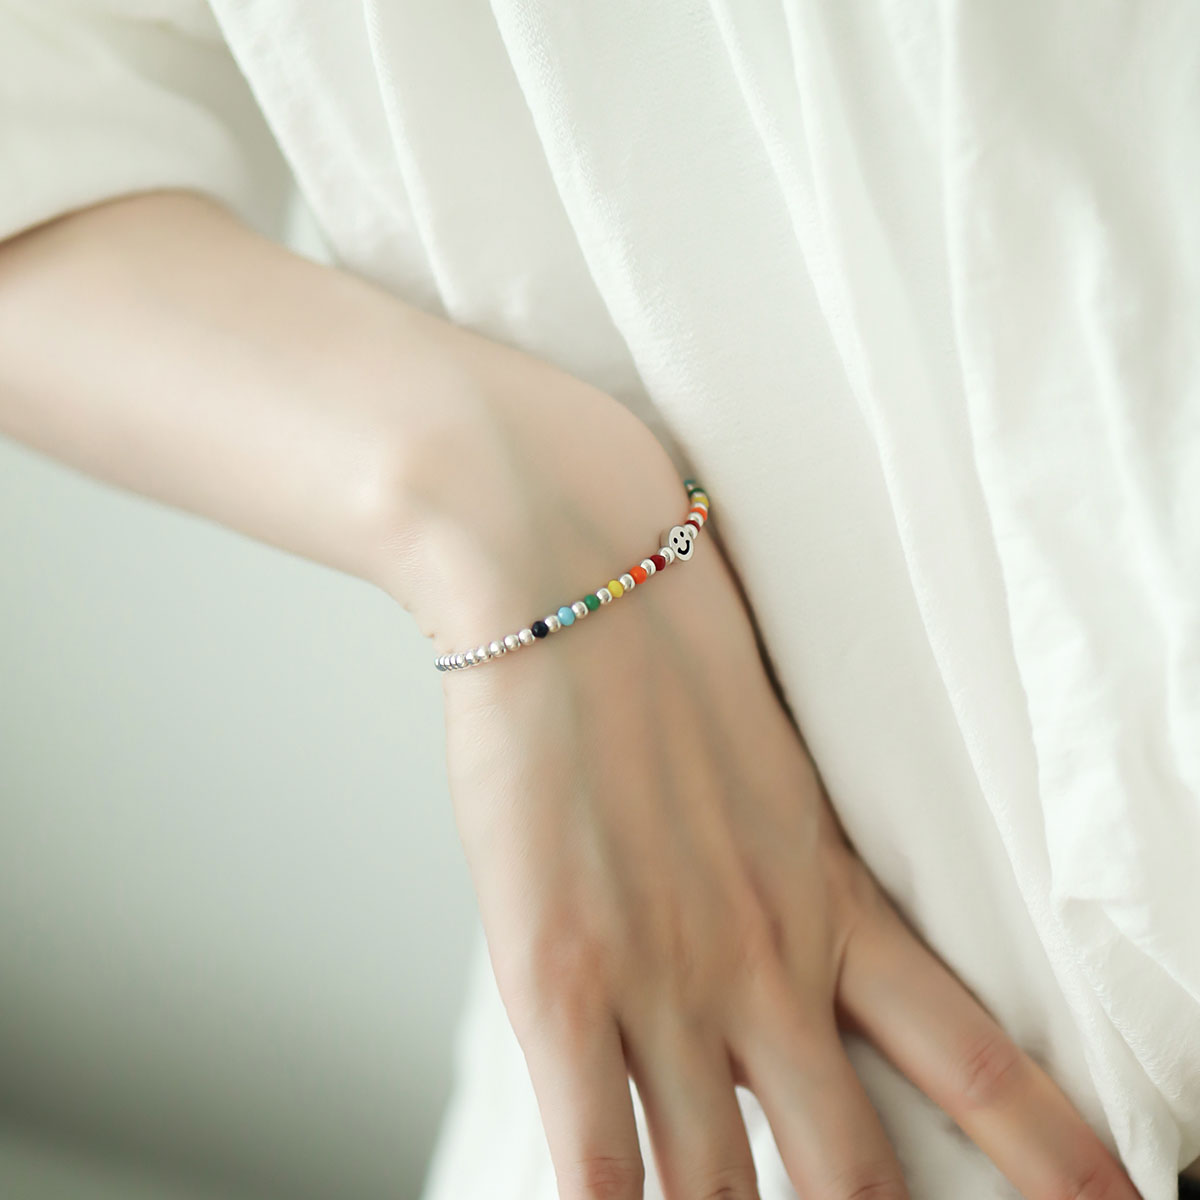 Small silver beaded bracelet on women wrist.